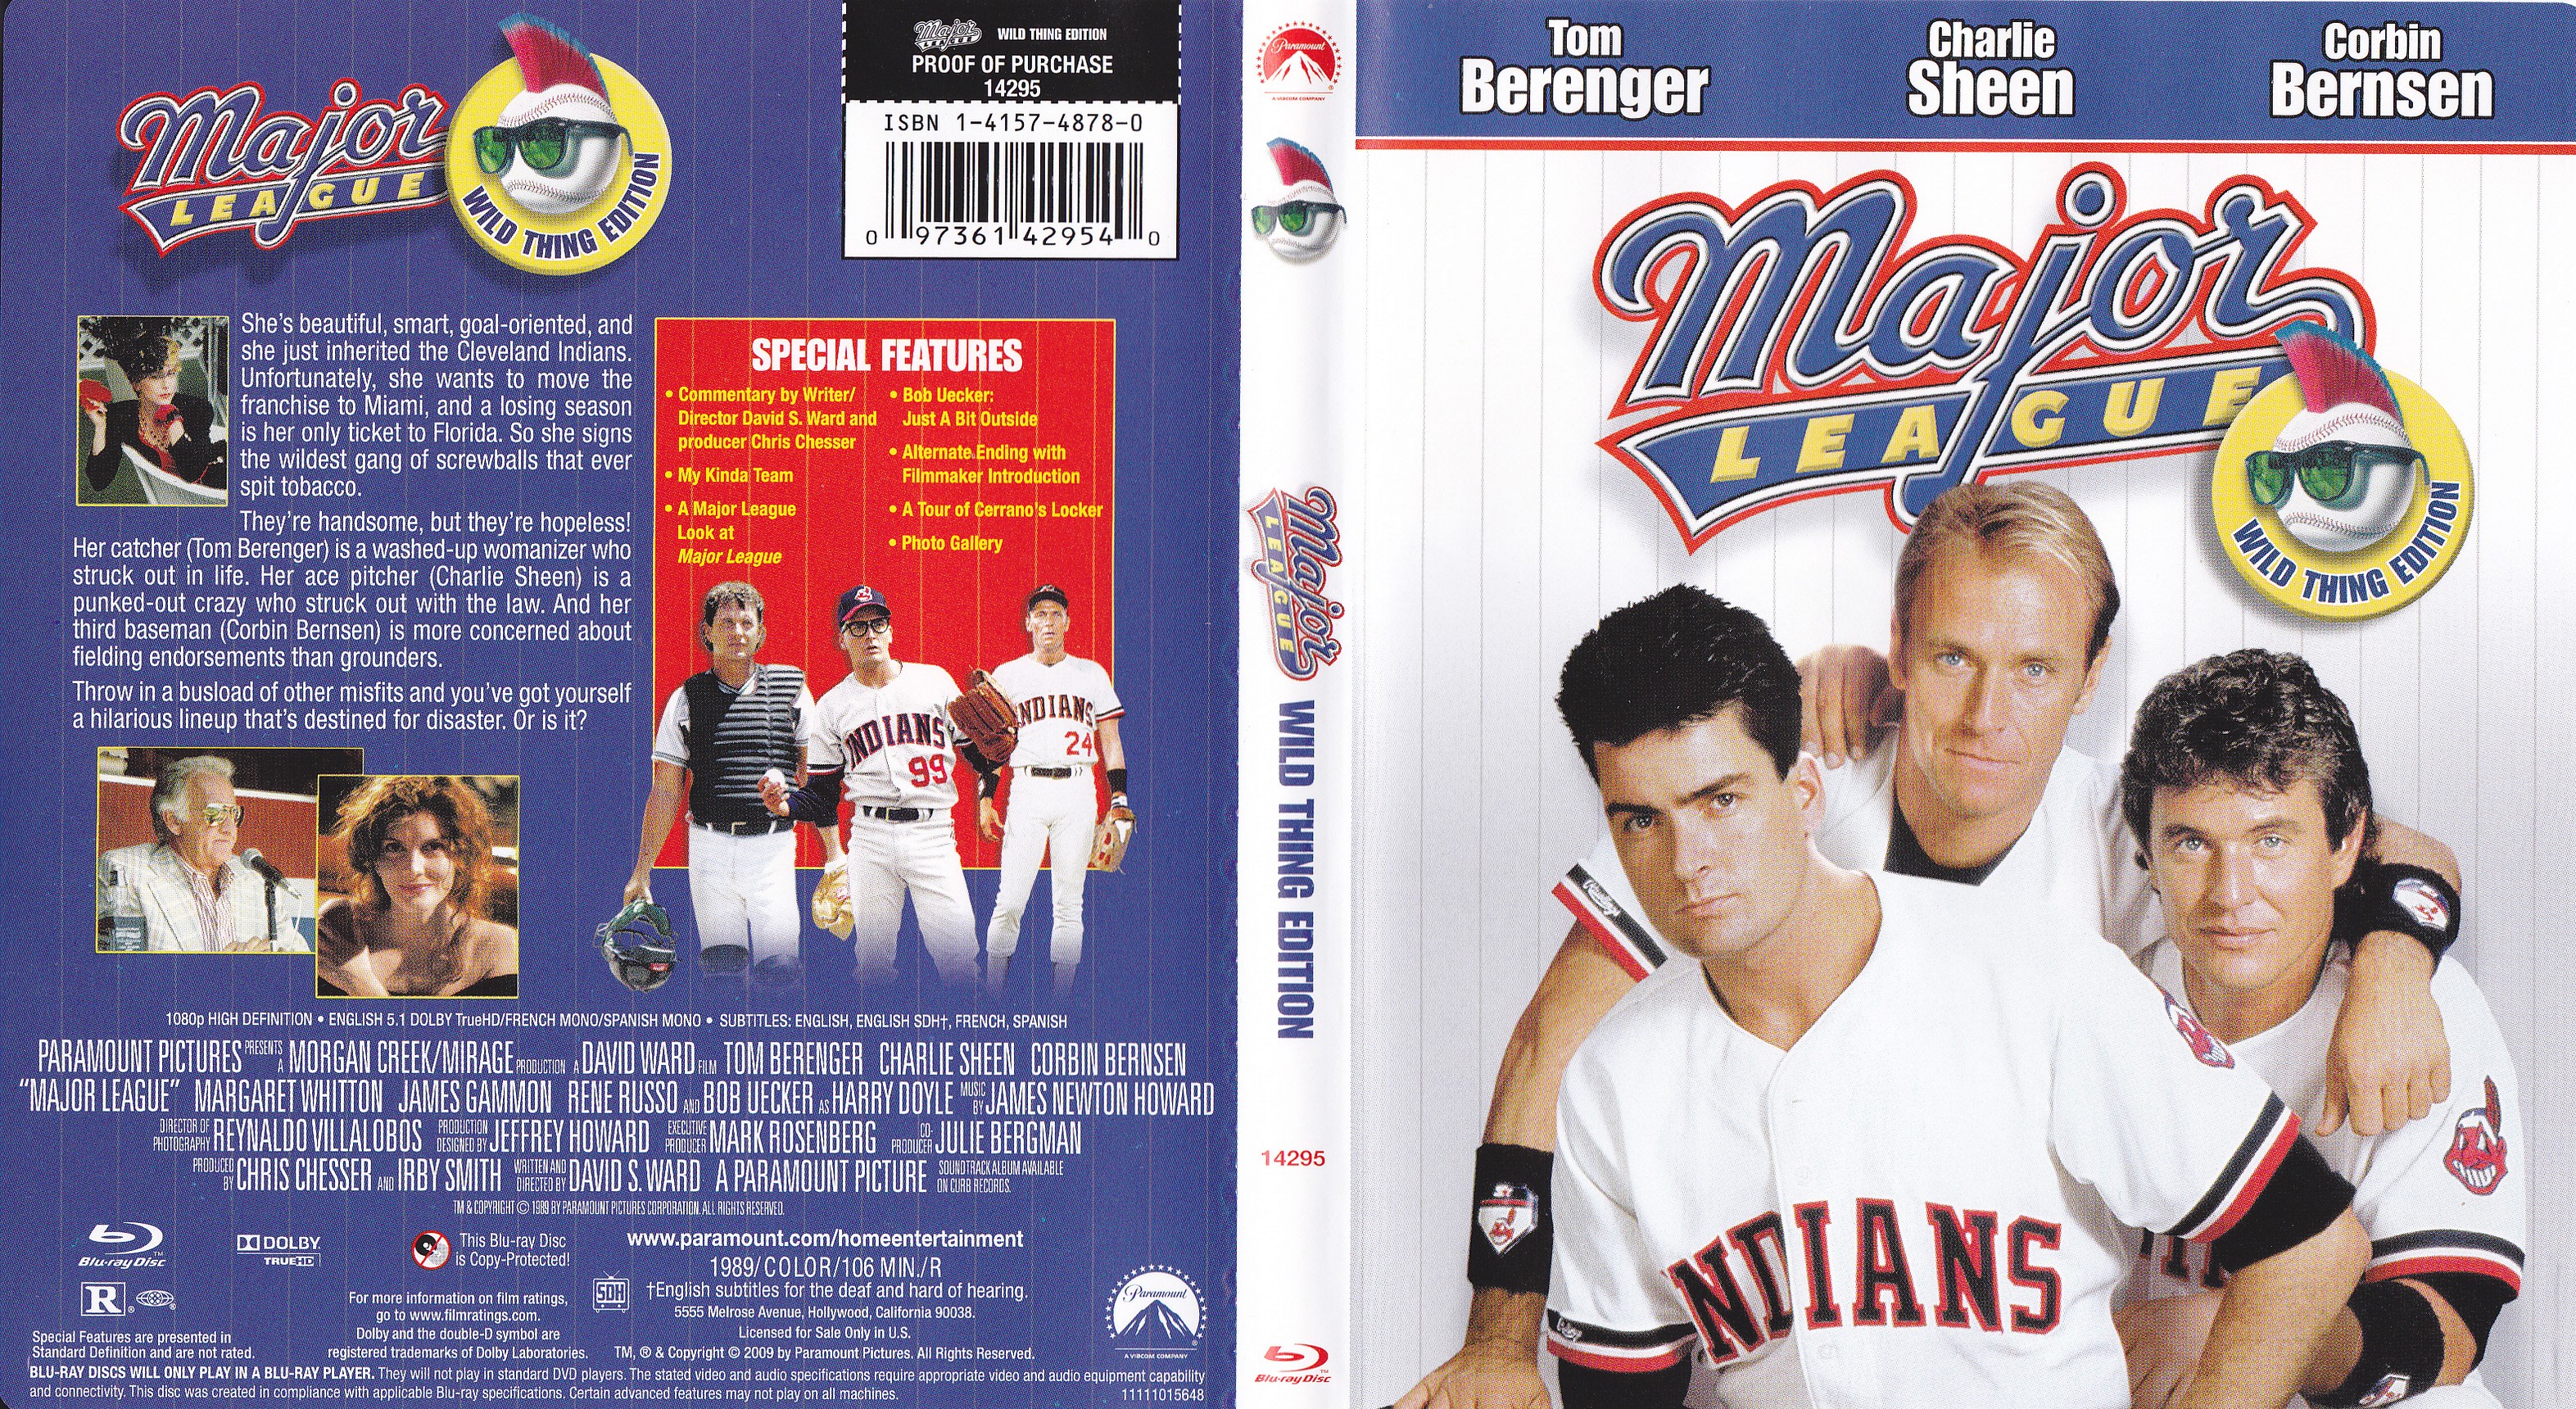 Jaquette DVD Major League - Les indians Zone 1 (BLU-RAY)